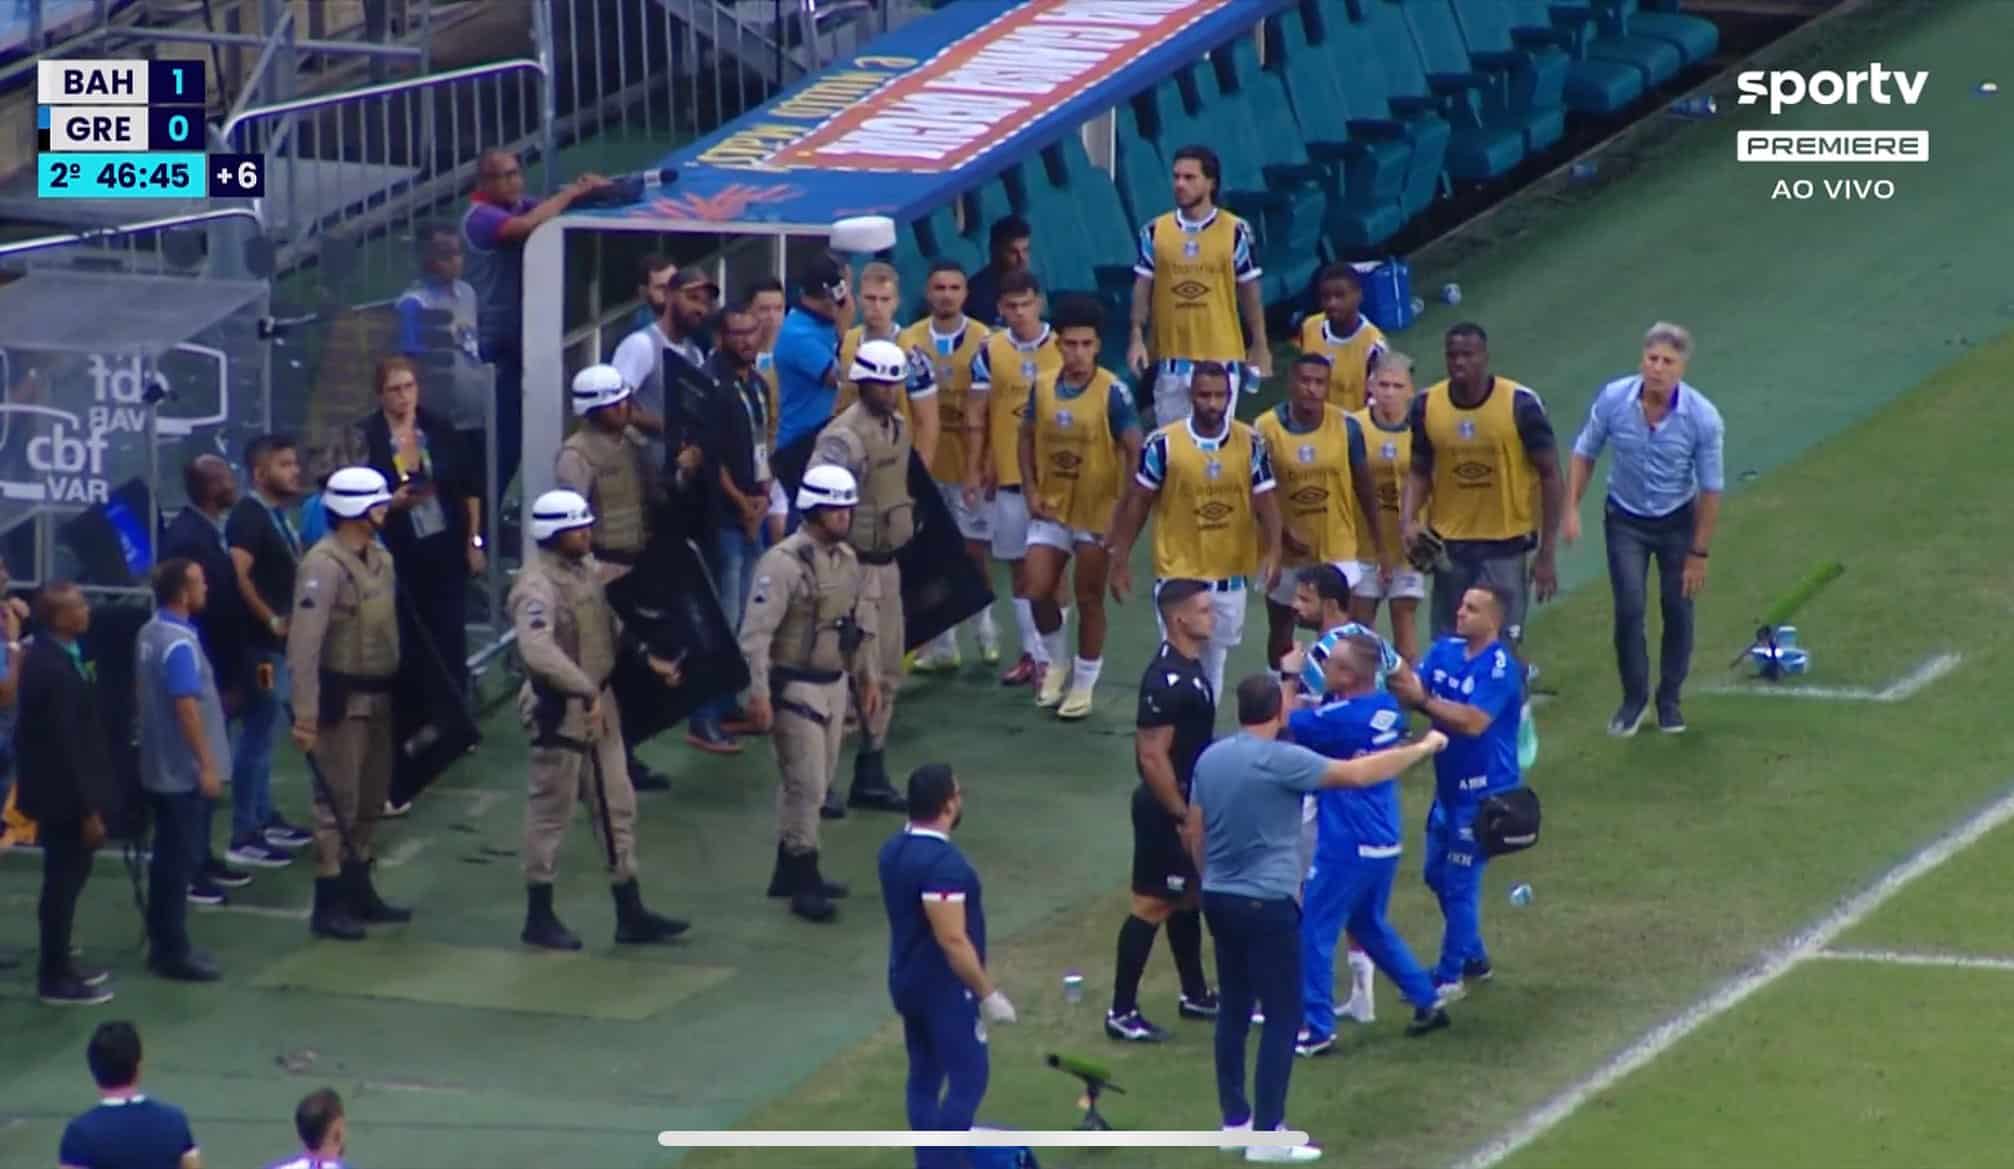 Expulsão Diego Costa no jogo de Bahia x Grêmio